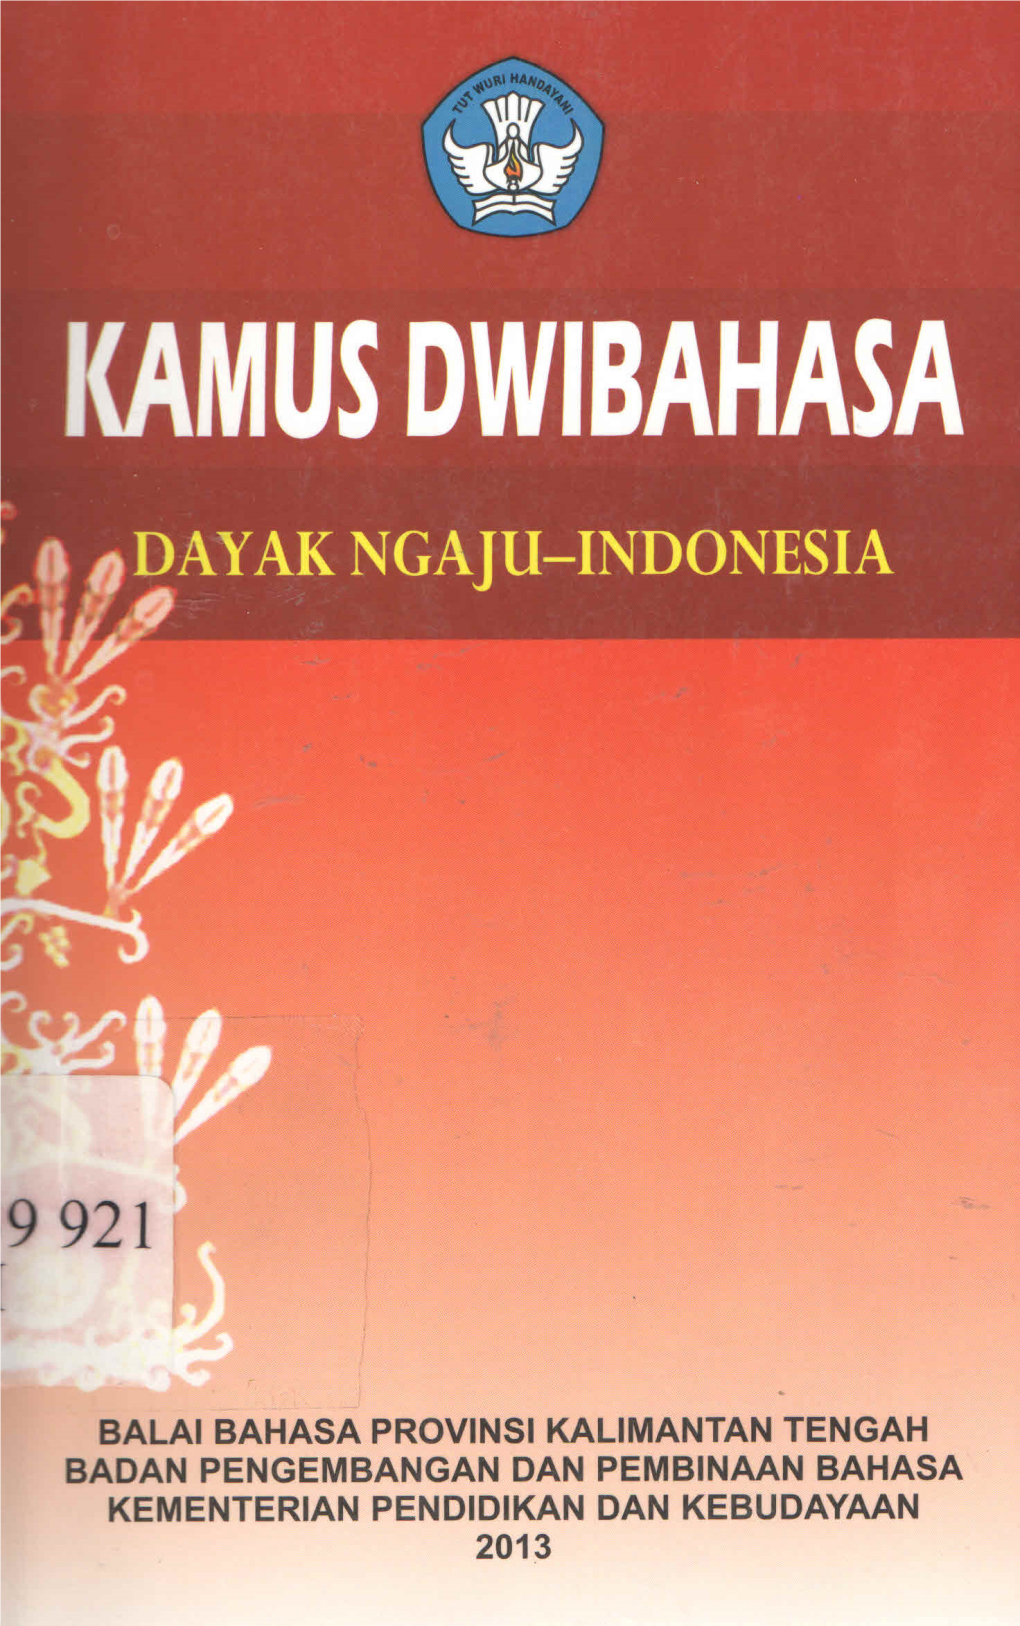 Kamus Dwibahasa Dayak Ngaju - Indonesia